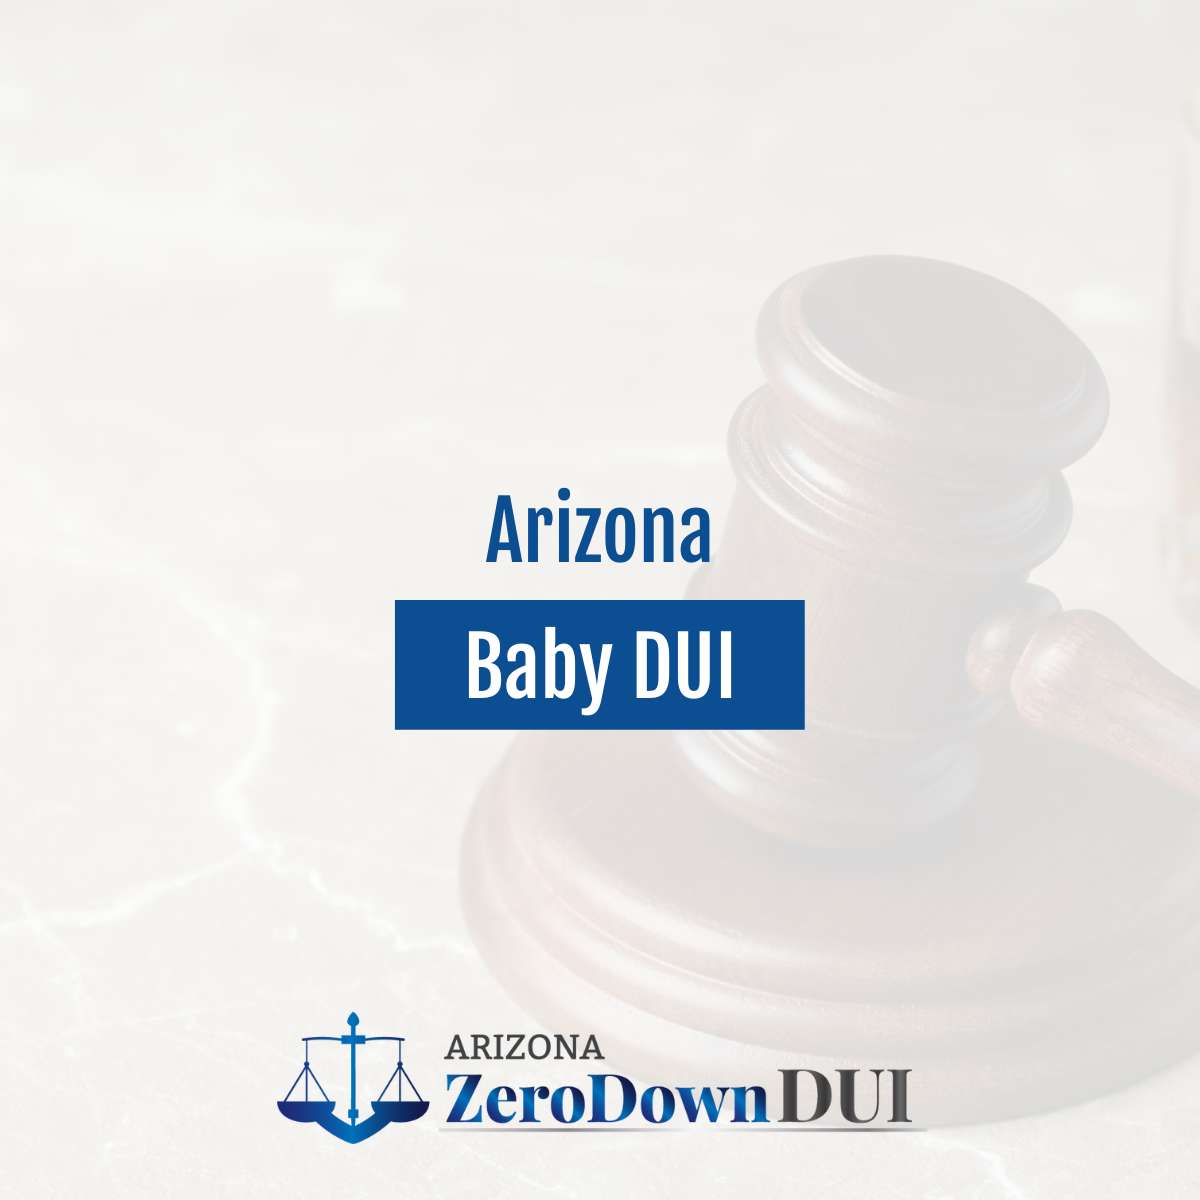 Arizona Baby DUI